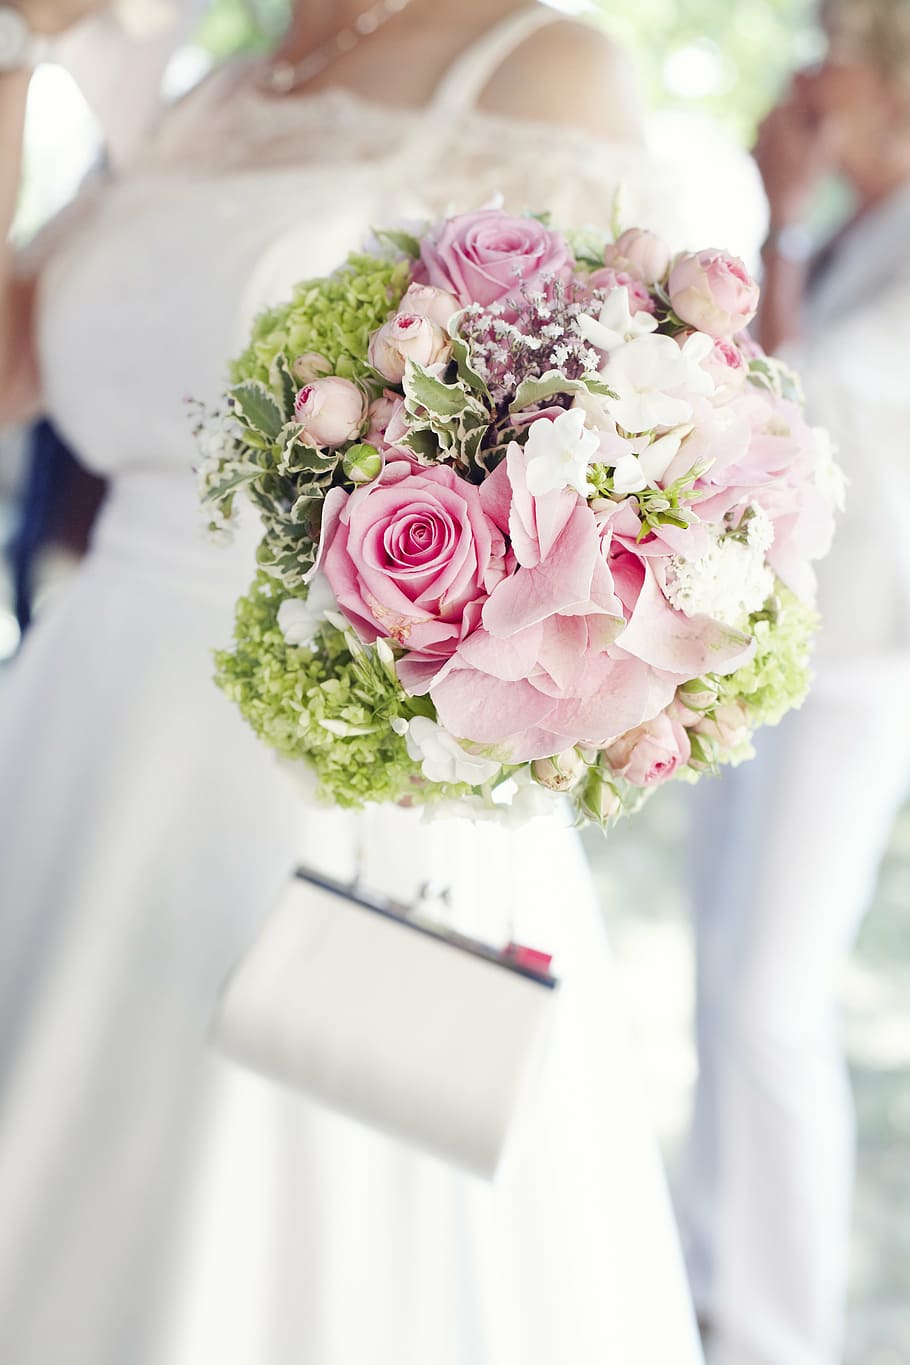 pink rose bouquet, bride, bouquet, wedding, flowers, love, bridal bouquet, marry, marriage, white